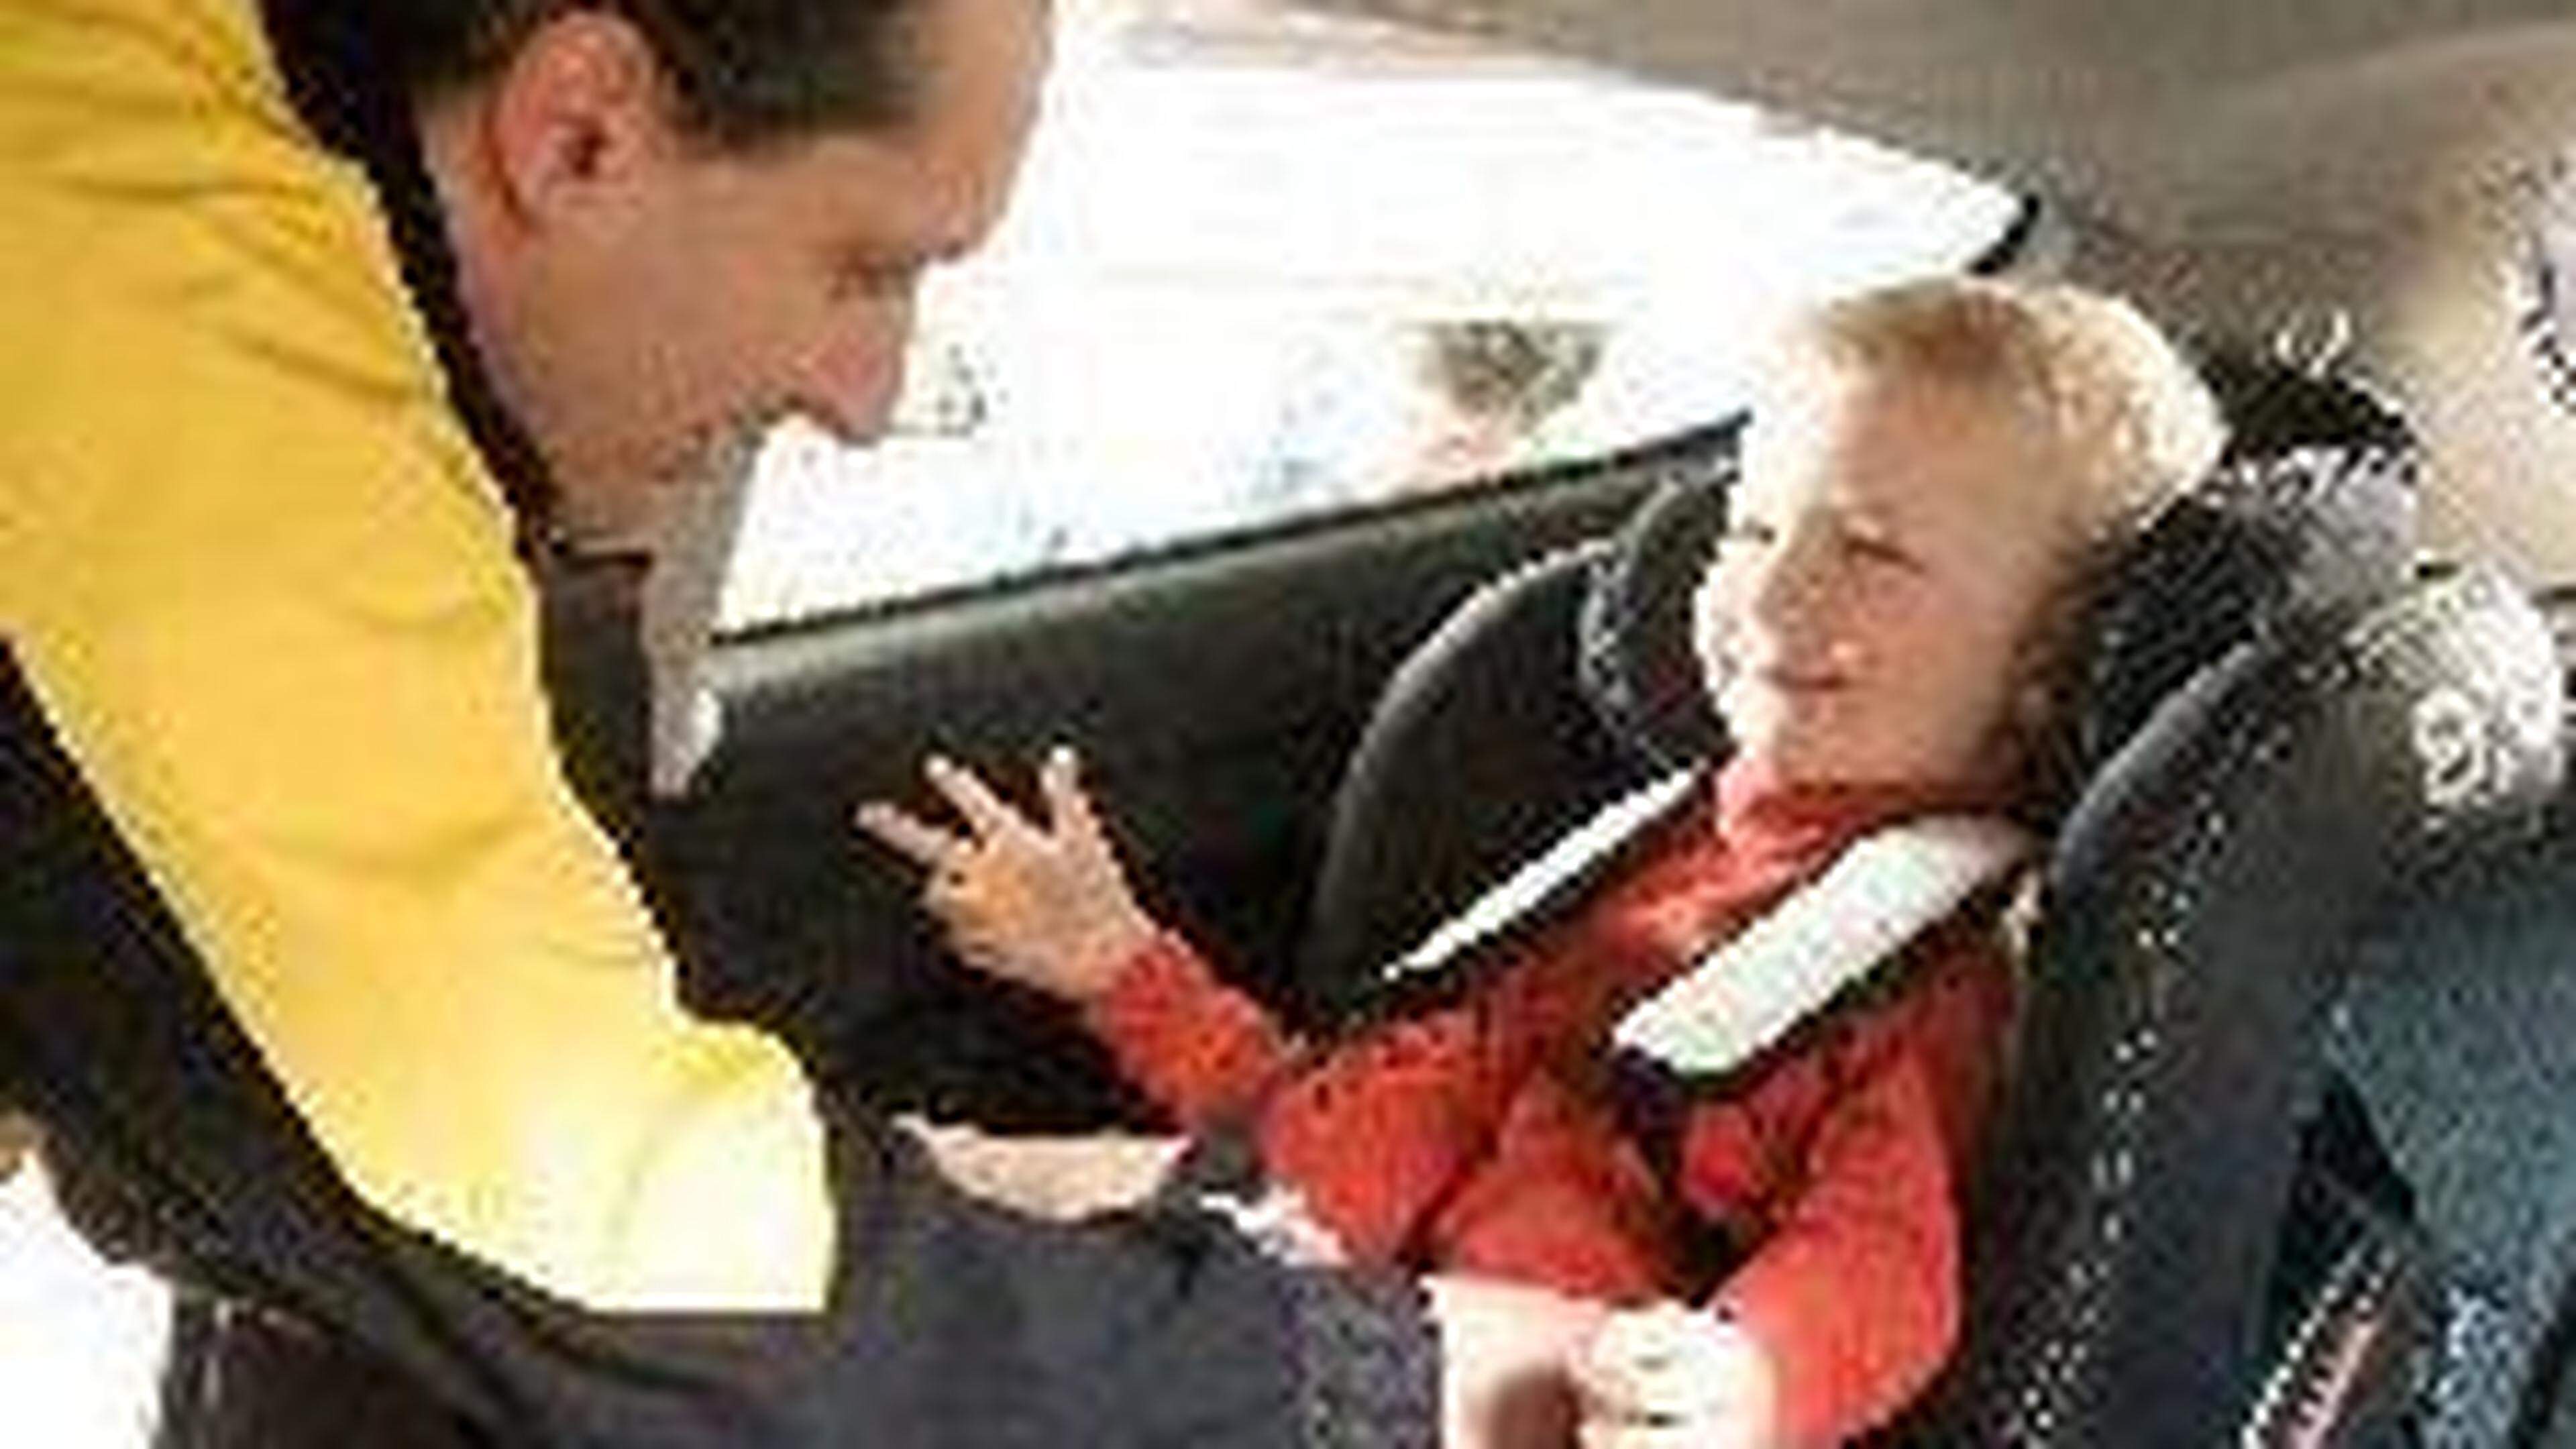 Kind im Auto: Reicht eine Sitzerhöhung?